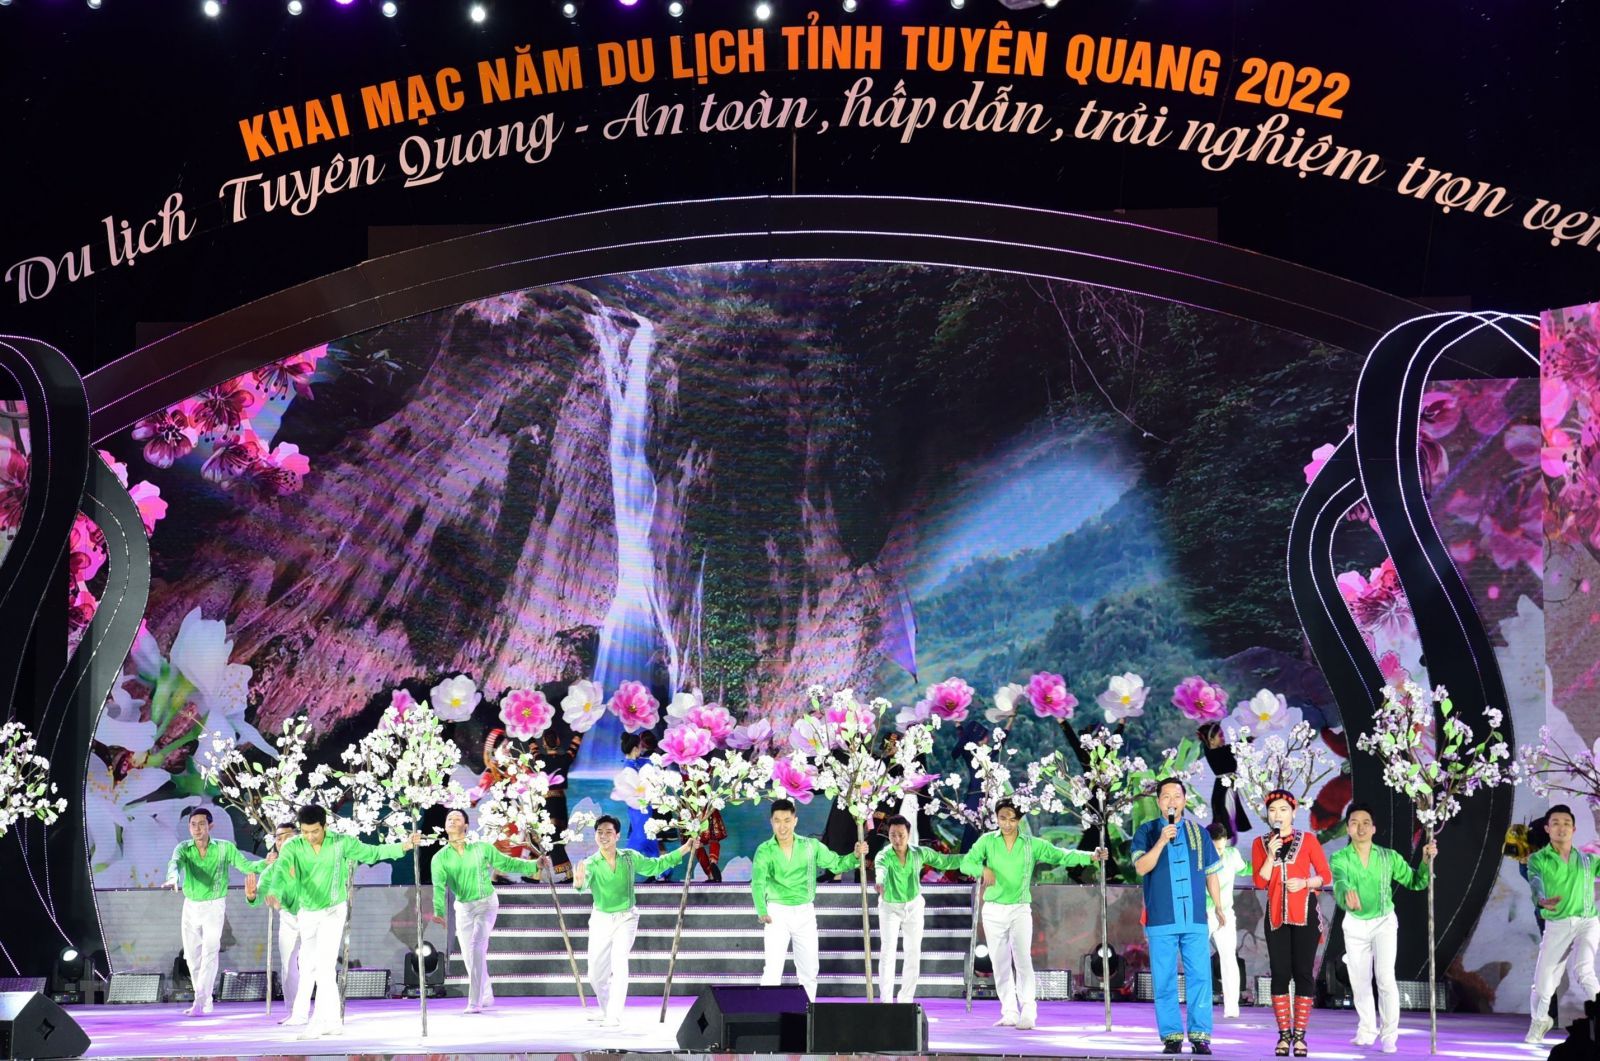 Tiết mục văn nghệ mở màn tại Lễ khai mạc Năm du lịch tỉnh Tuyên Quang 2022.